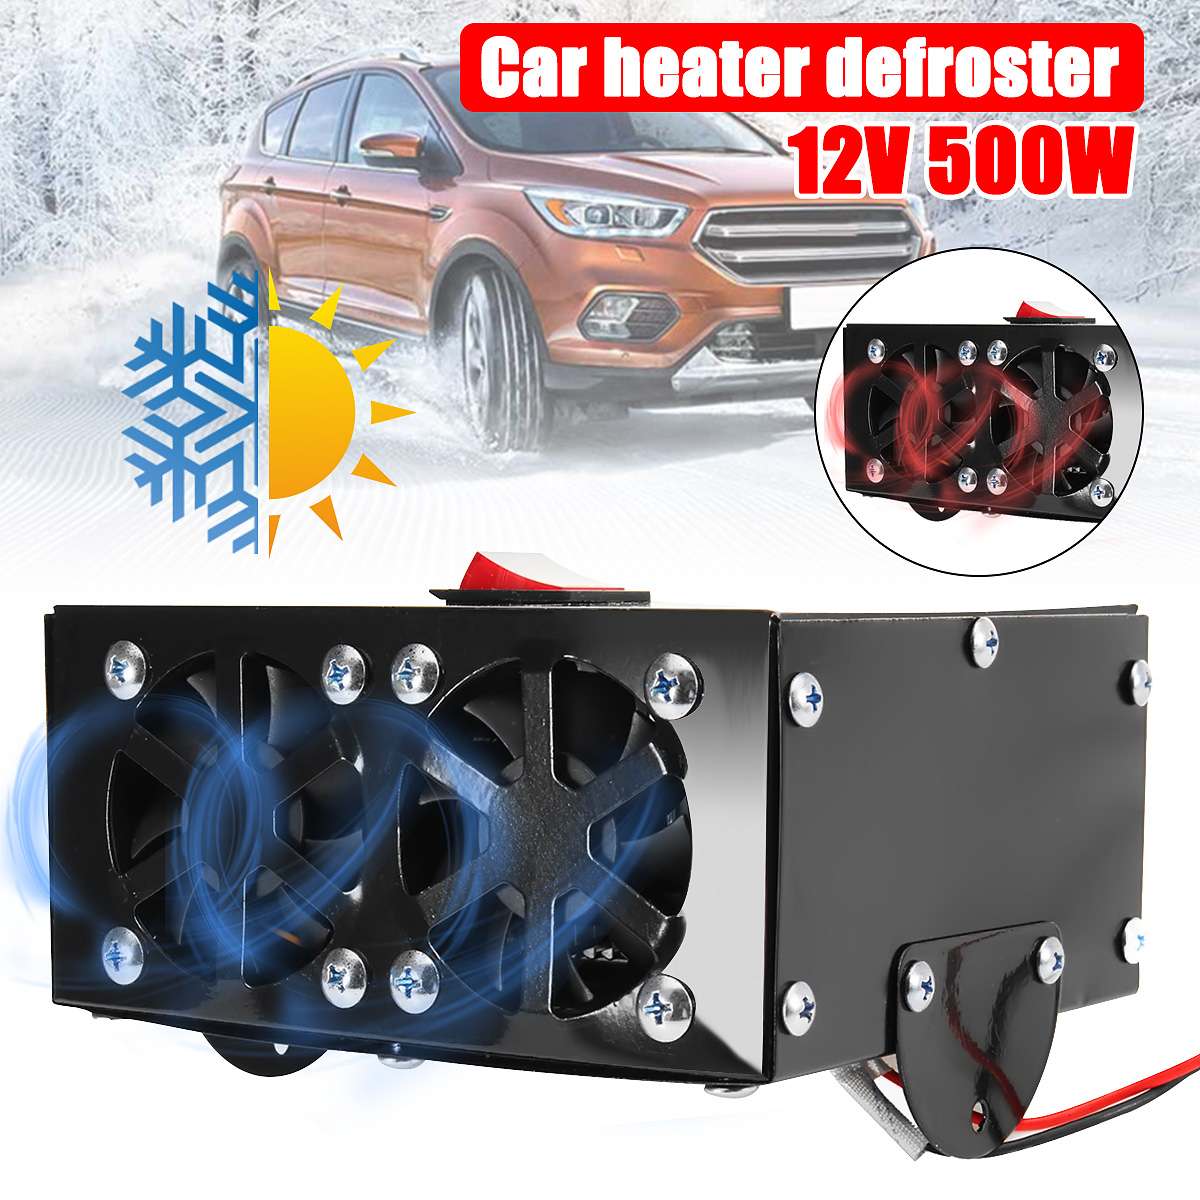 12V 500W Auto Car Heater Defroster Demister Heating Warmer Car Dryer Electric Fan Heater Windscreen Defroster